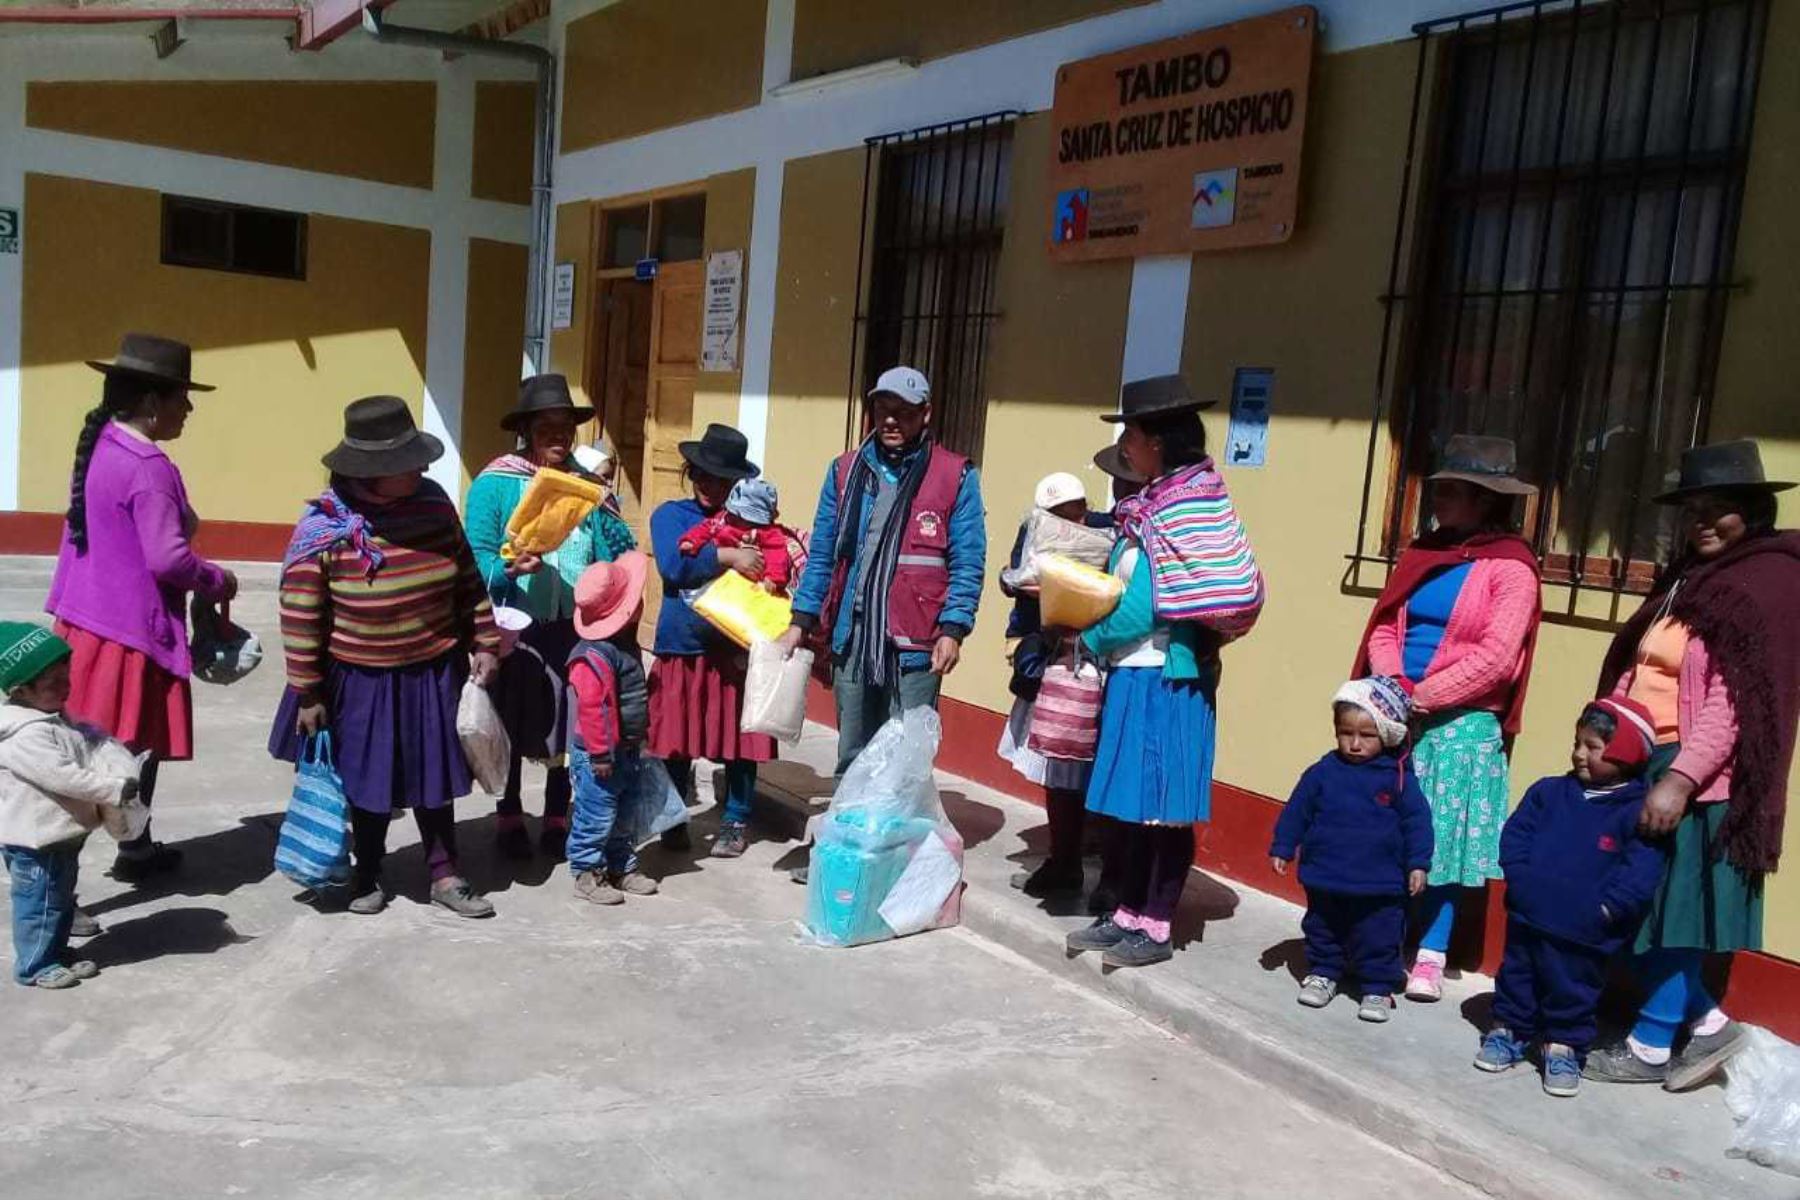 Frente a las bajas temperaturas que sufren los pobladores de las zonas altoandinas del país, el Ministerio de Desarrollo e Inclusión Social (Midis), a través de los Tambos del Programa Nacional PAIS recepcionó, hasta la fecha, más de 10,000 kits de abrigo para los pobladores más vulnerables que viven en los distritos más alejados de las regiones Apurímac y Cusco.